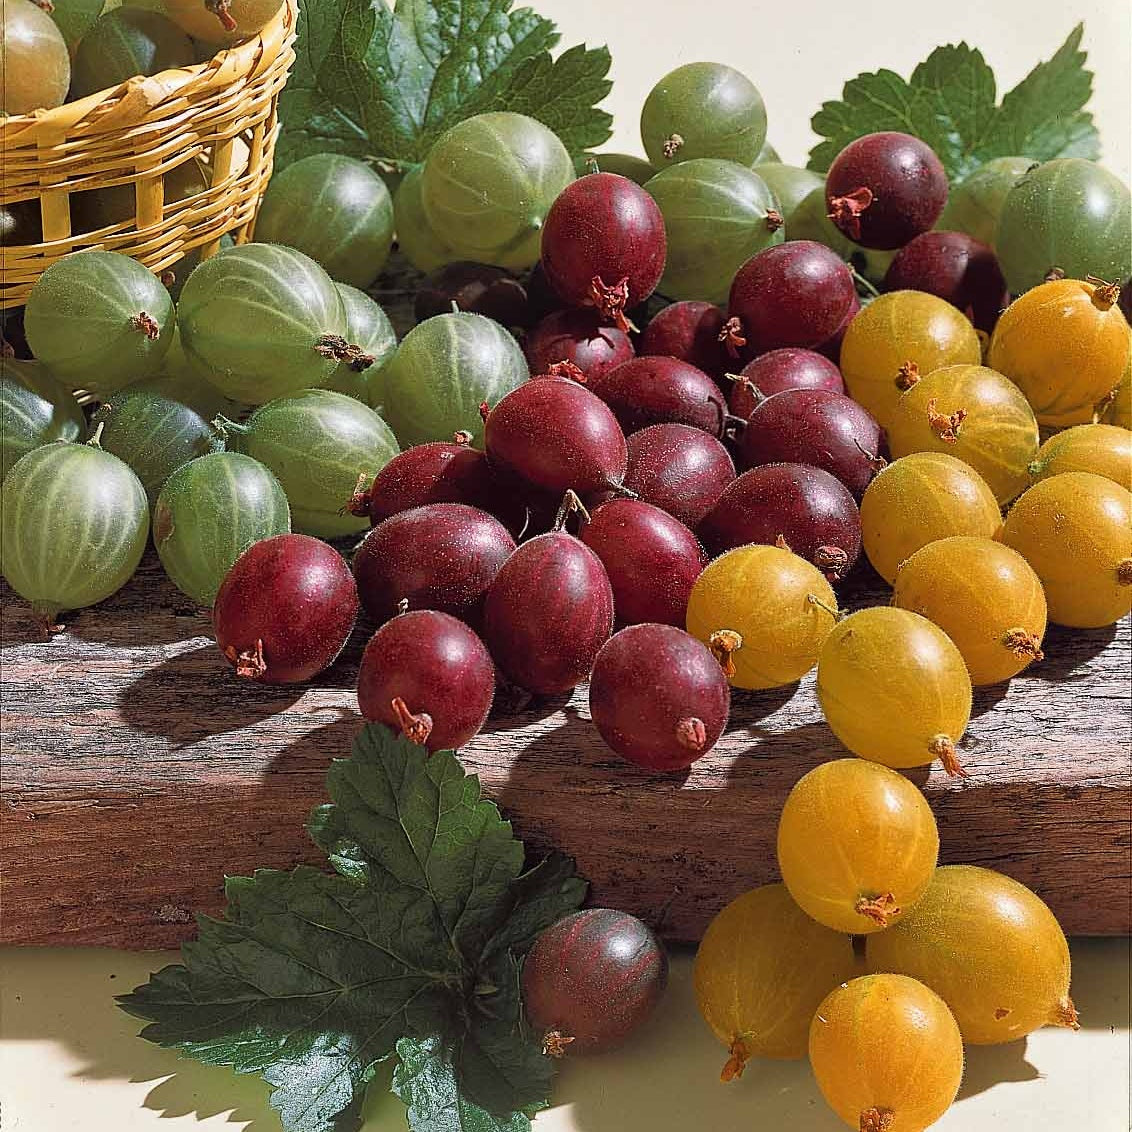 Collection de 4 groseilliers à maquereaux - Ribes uva-crispa winhams industry, anglaise blanch - Fruitiers Arbres et arbustes